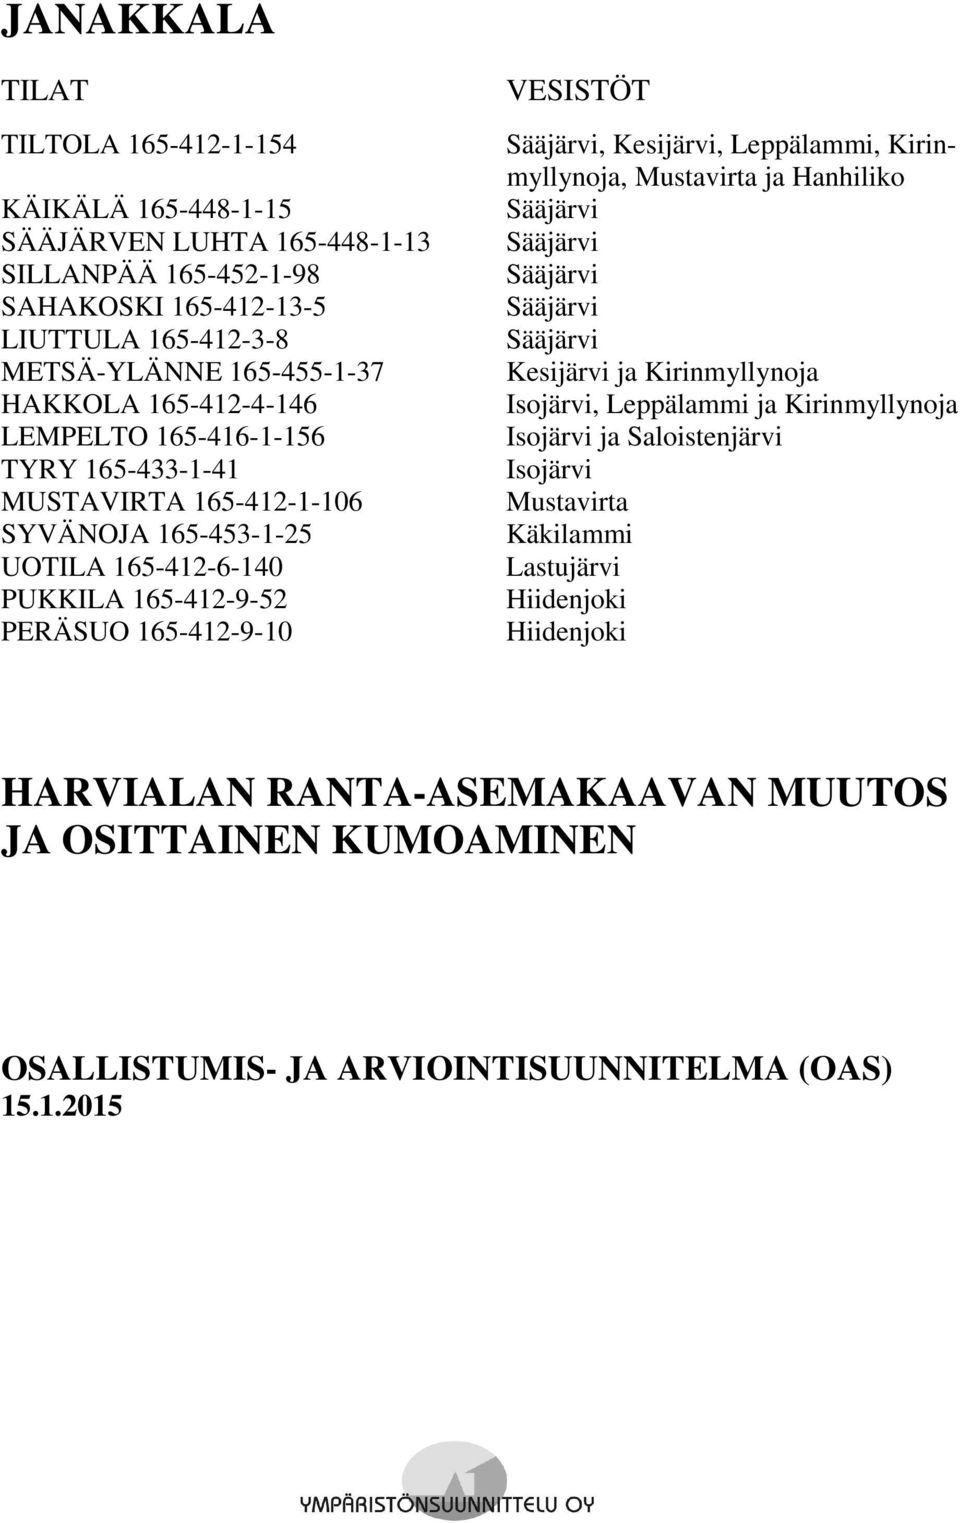 Sääjärvi, Kesijärvi, Leppälammi, Kirinmyllynoja, Mustavirta ja Hanhiliko Sääjärvi Sääjärvi Sääjärvi Sääjärvi Sääjärvi Kesijärvi ja Kirinmyllynoja Isojärvi, Leppälammi ja Kirinmyllynoja